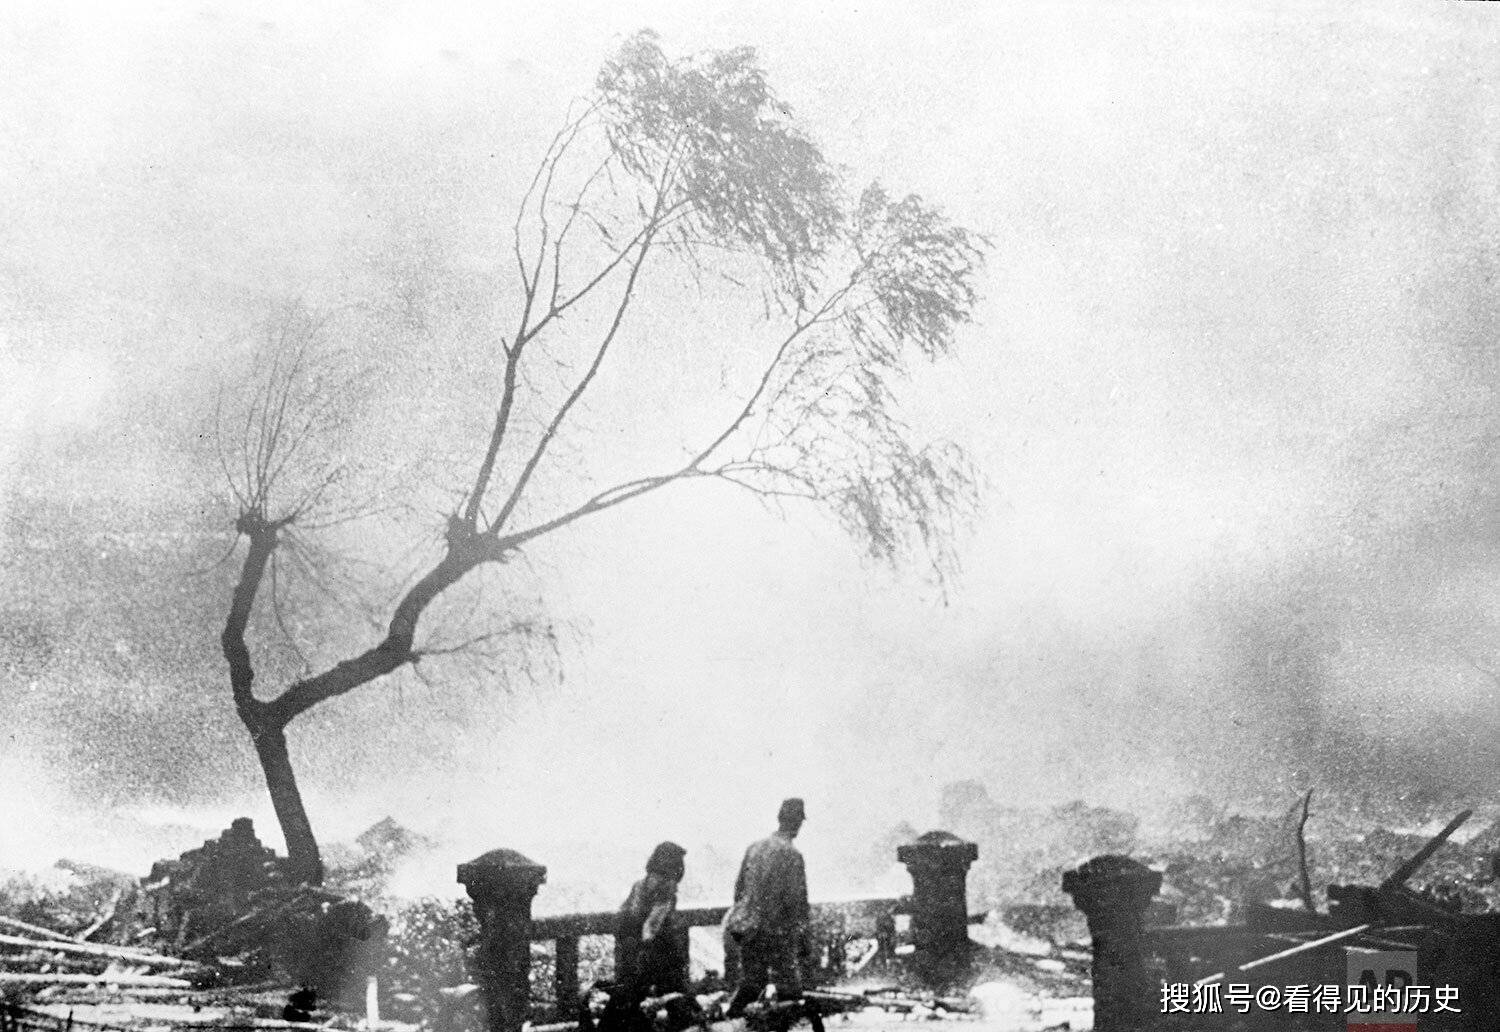 1945 年   月   日,长崎原子弹袭击的幸存者在火光冲天中走过废墟.